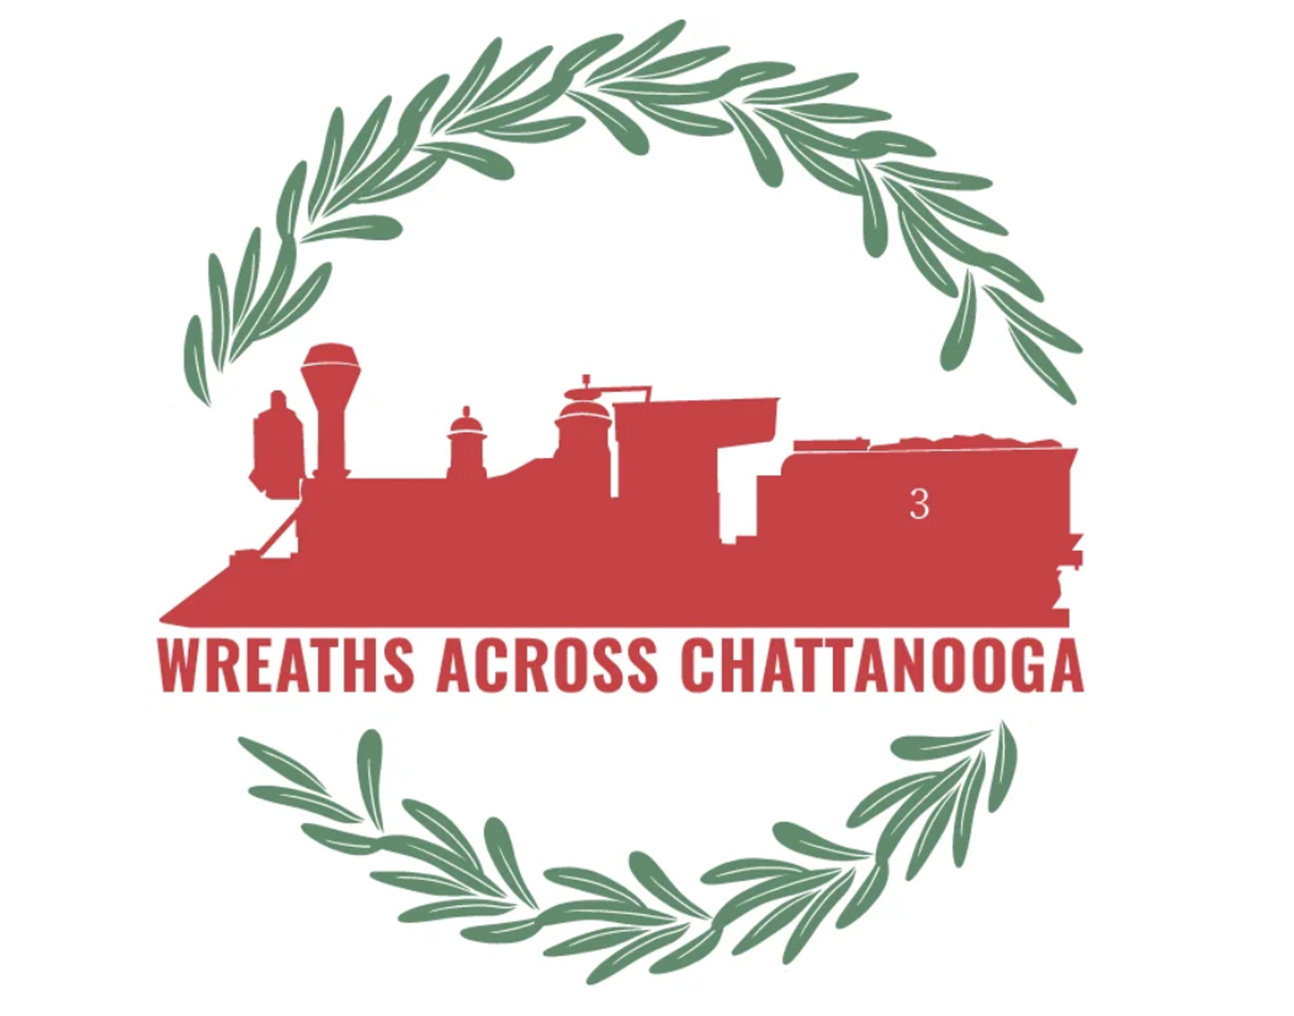 Wreaths Across Chattanooga